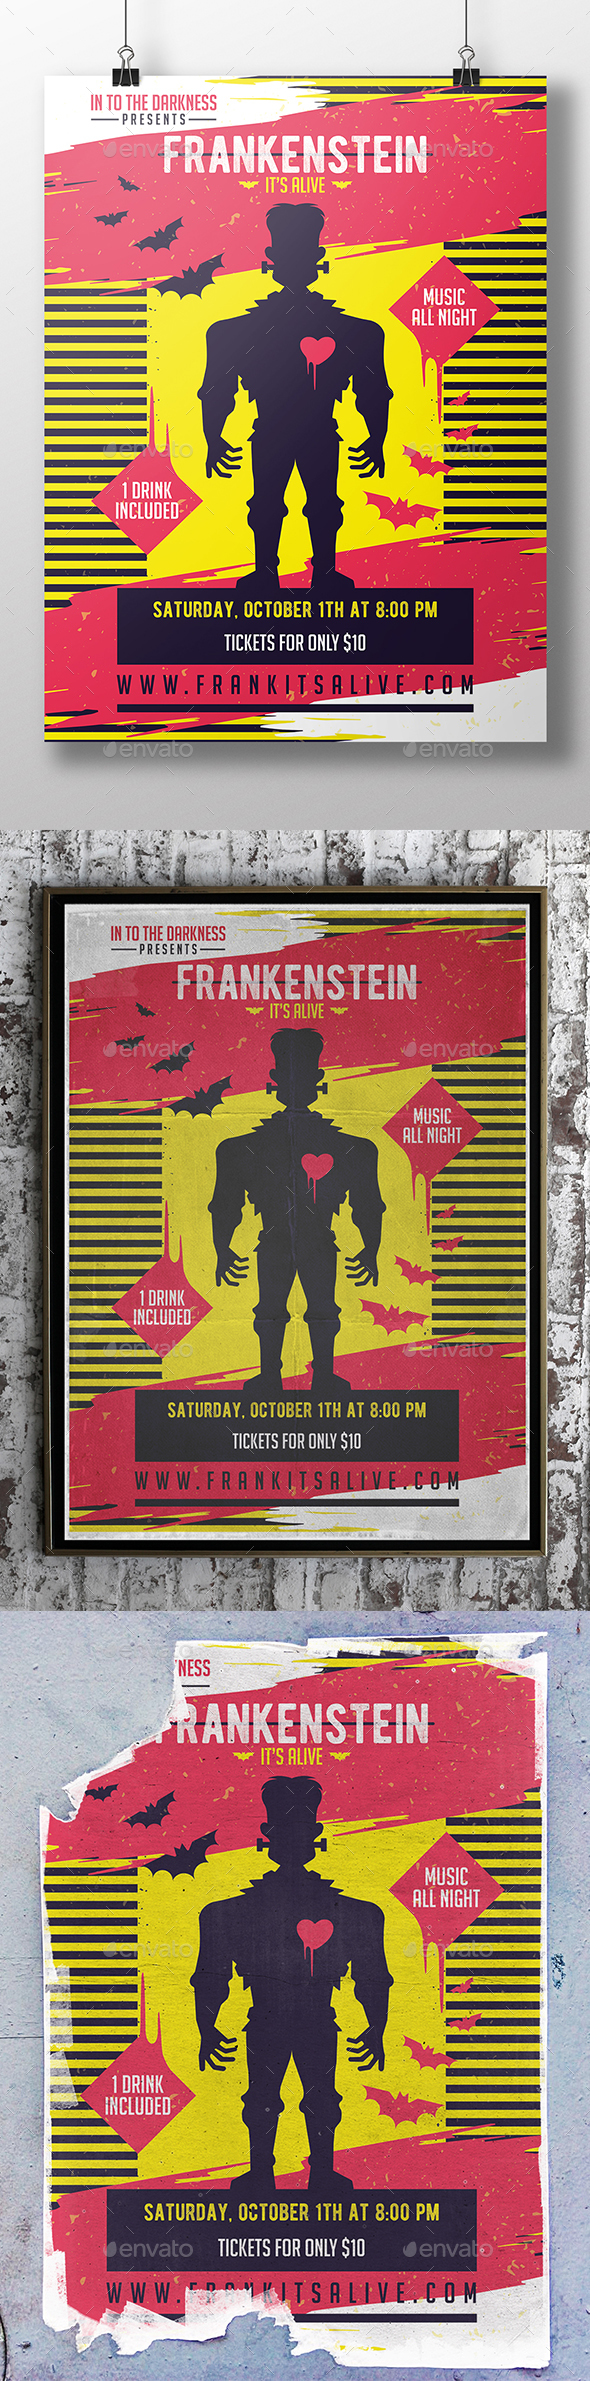 Frankenstein Halloween Flyer Template